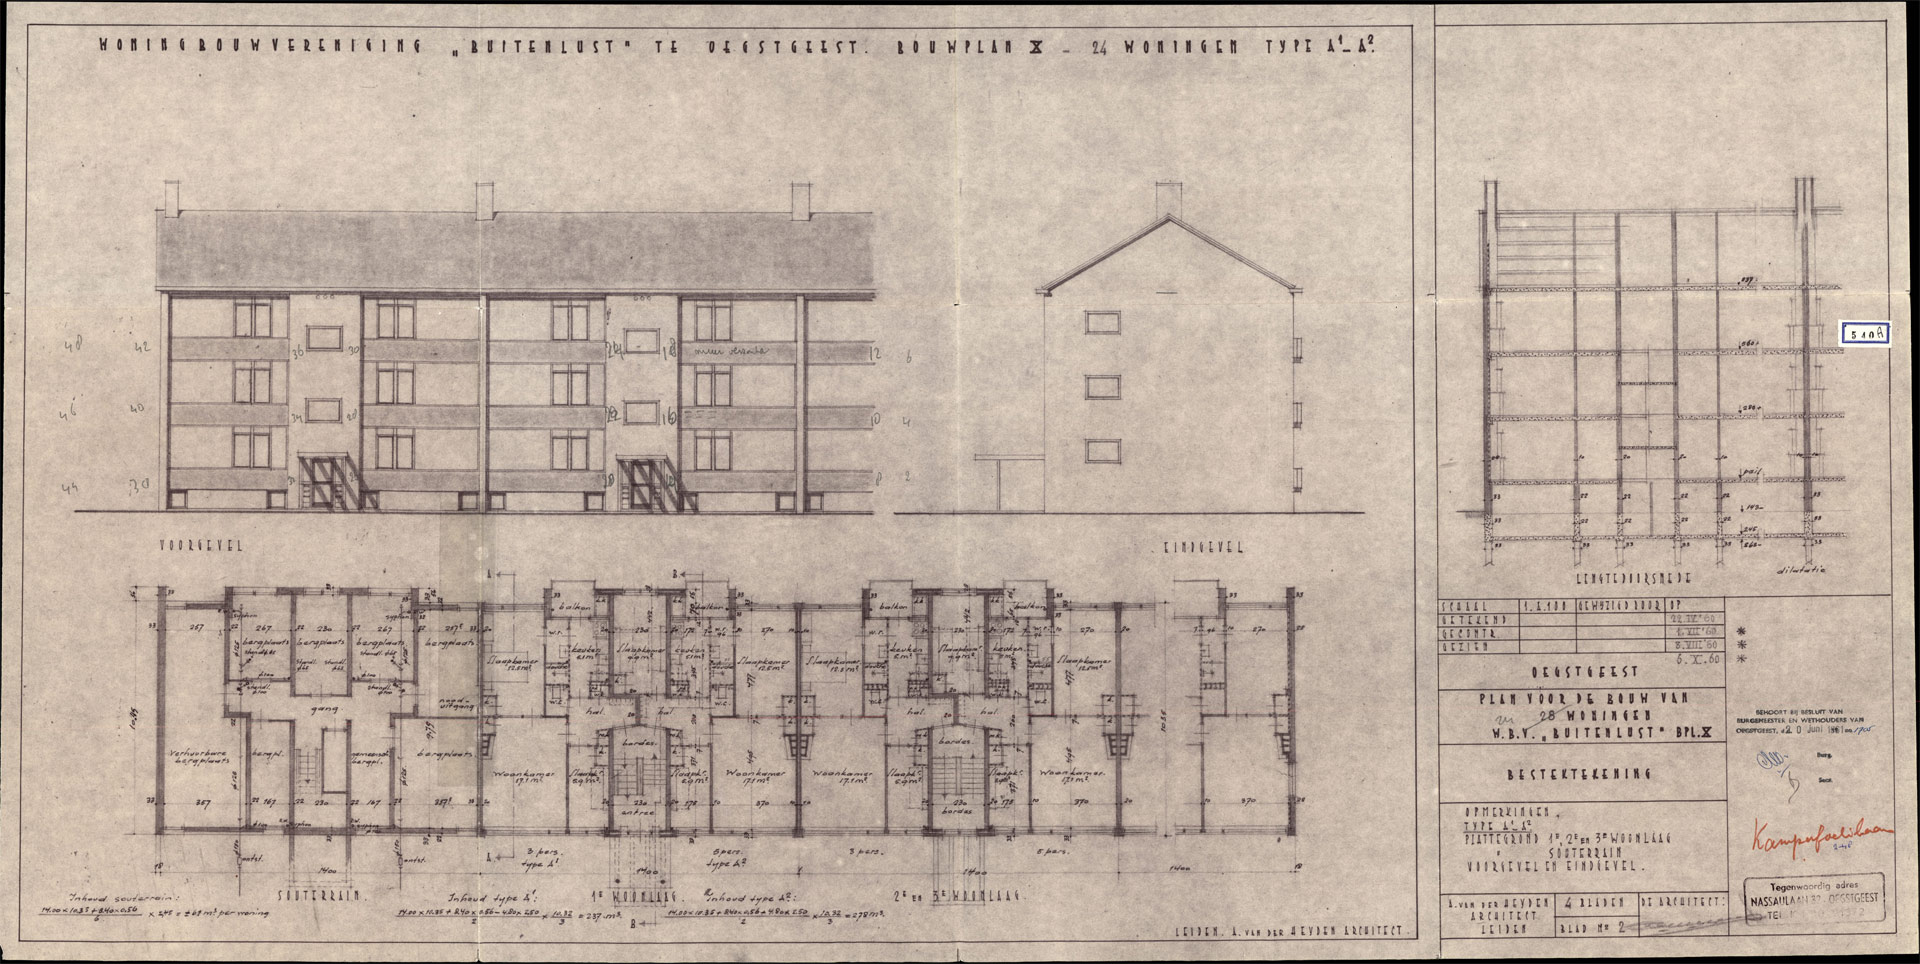 vernieuwbouw en hergebruik wooncomplex in Oegstgeest archieftekening